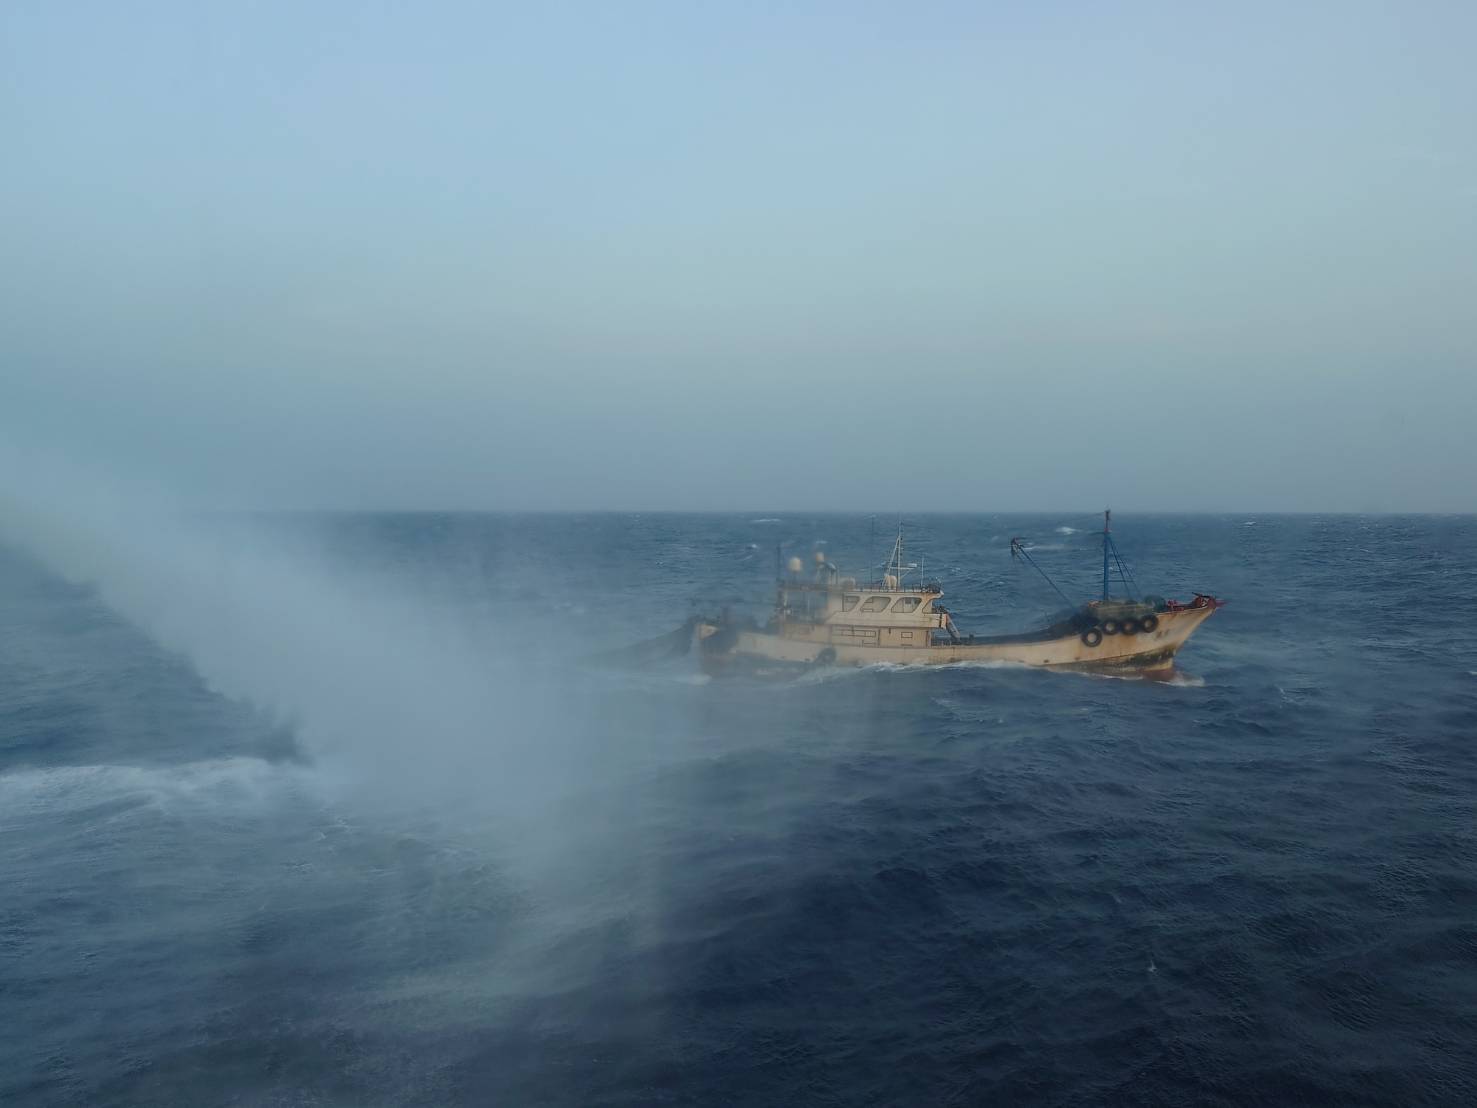 陸船趁強勁東北季風越界避風 海巡艦艇強力執法維護海域治安